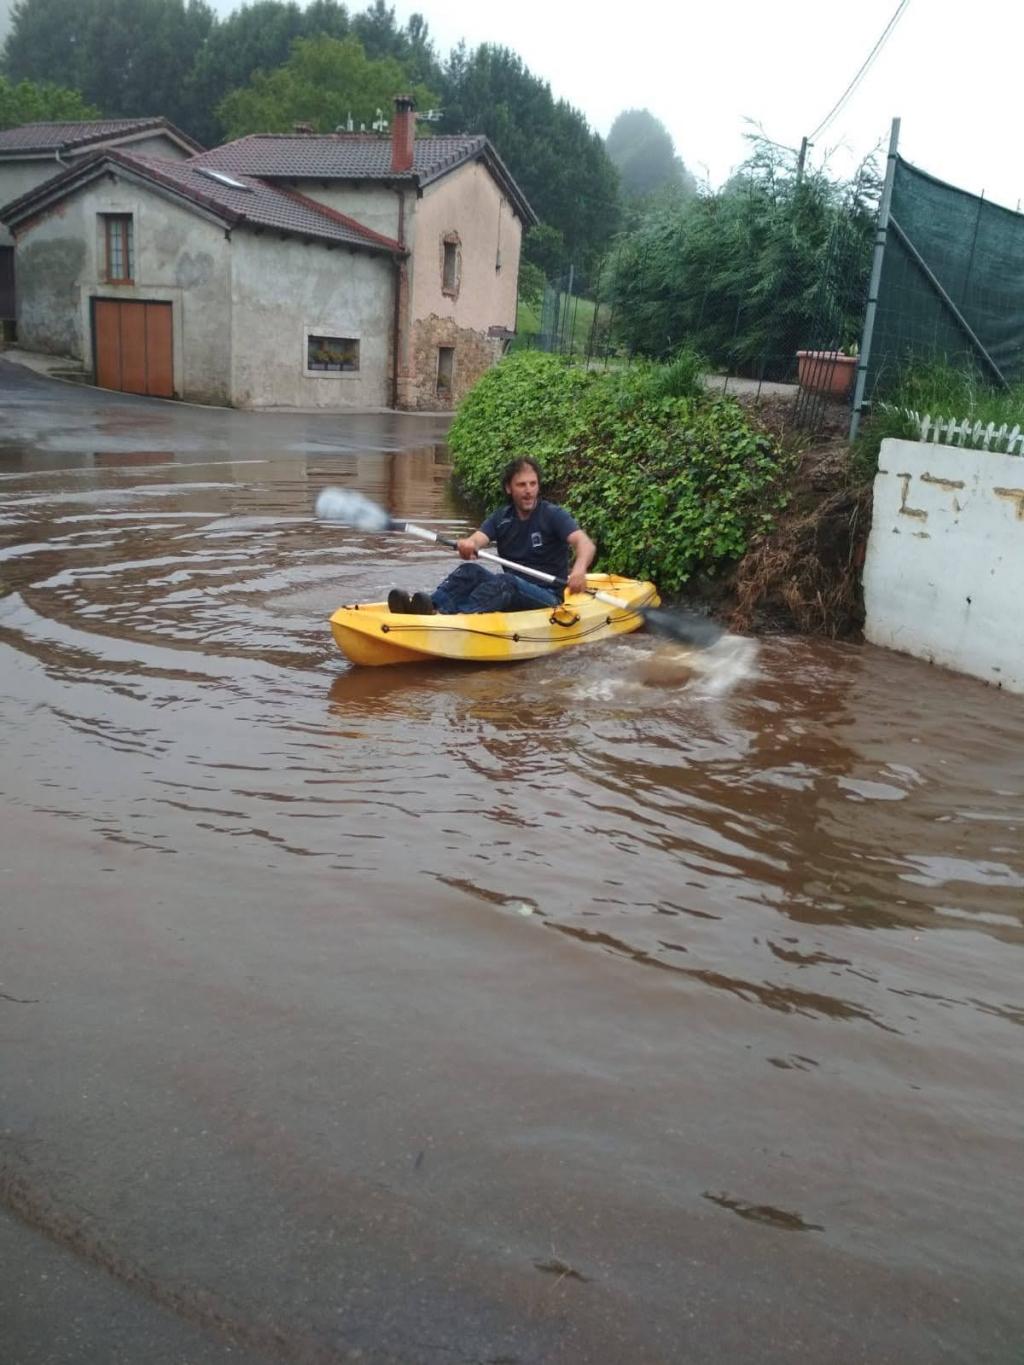 El Tapin - Los vecinos y vecinas de Castiello denuncian la dejadez del Ayuntamiento de Siero ante las inundaciones que sufren en la calzada pública desde hace año y medio.